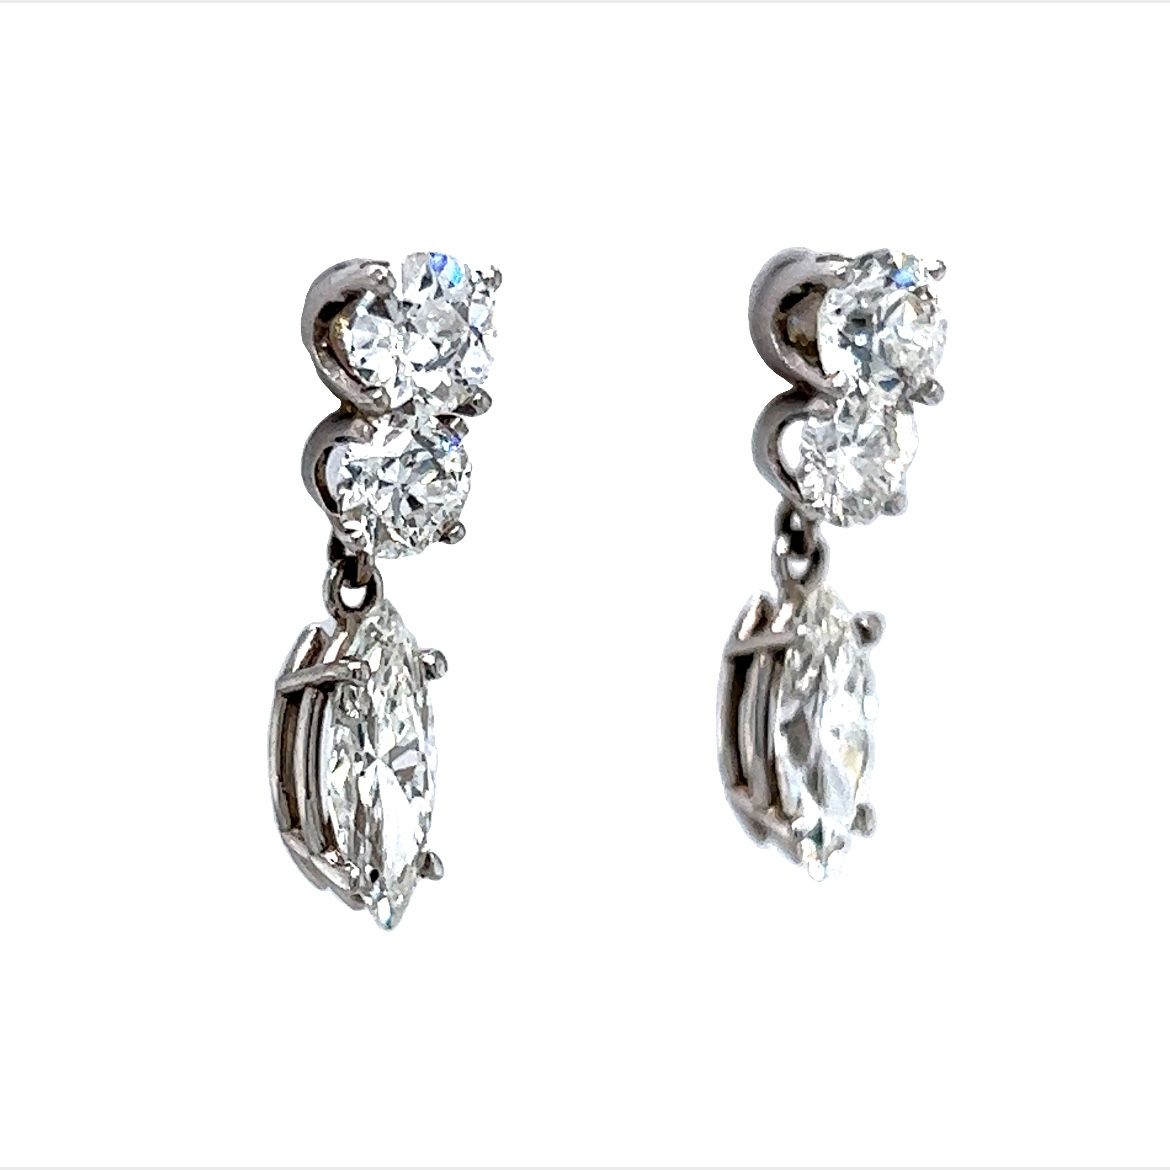 Marquise Cut Diamond Drop Earrings in 14k White Gold